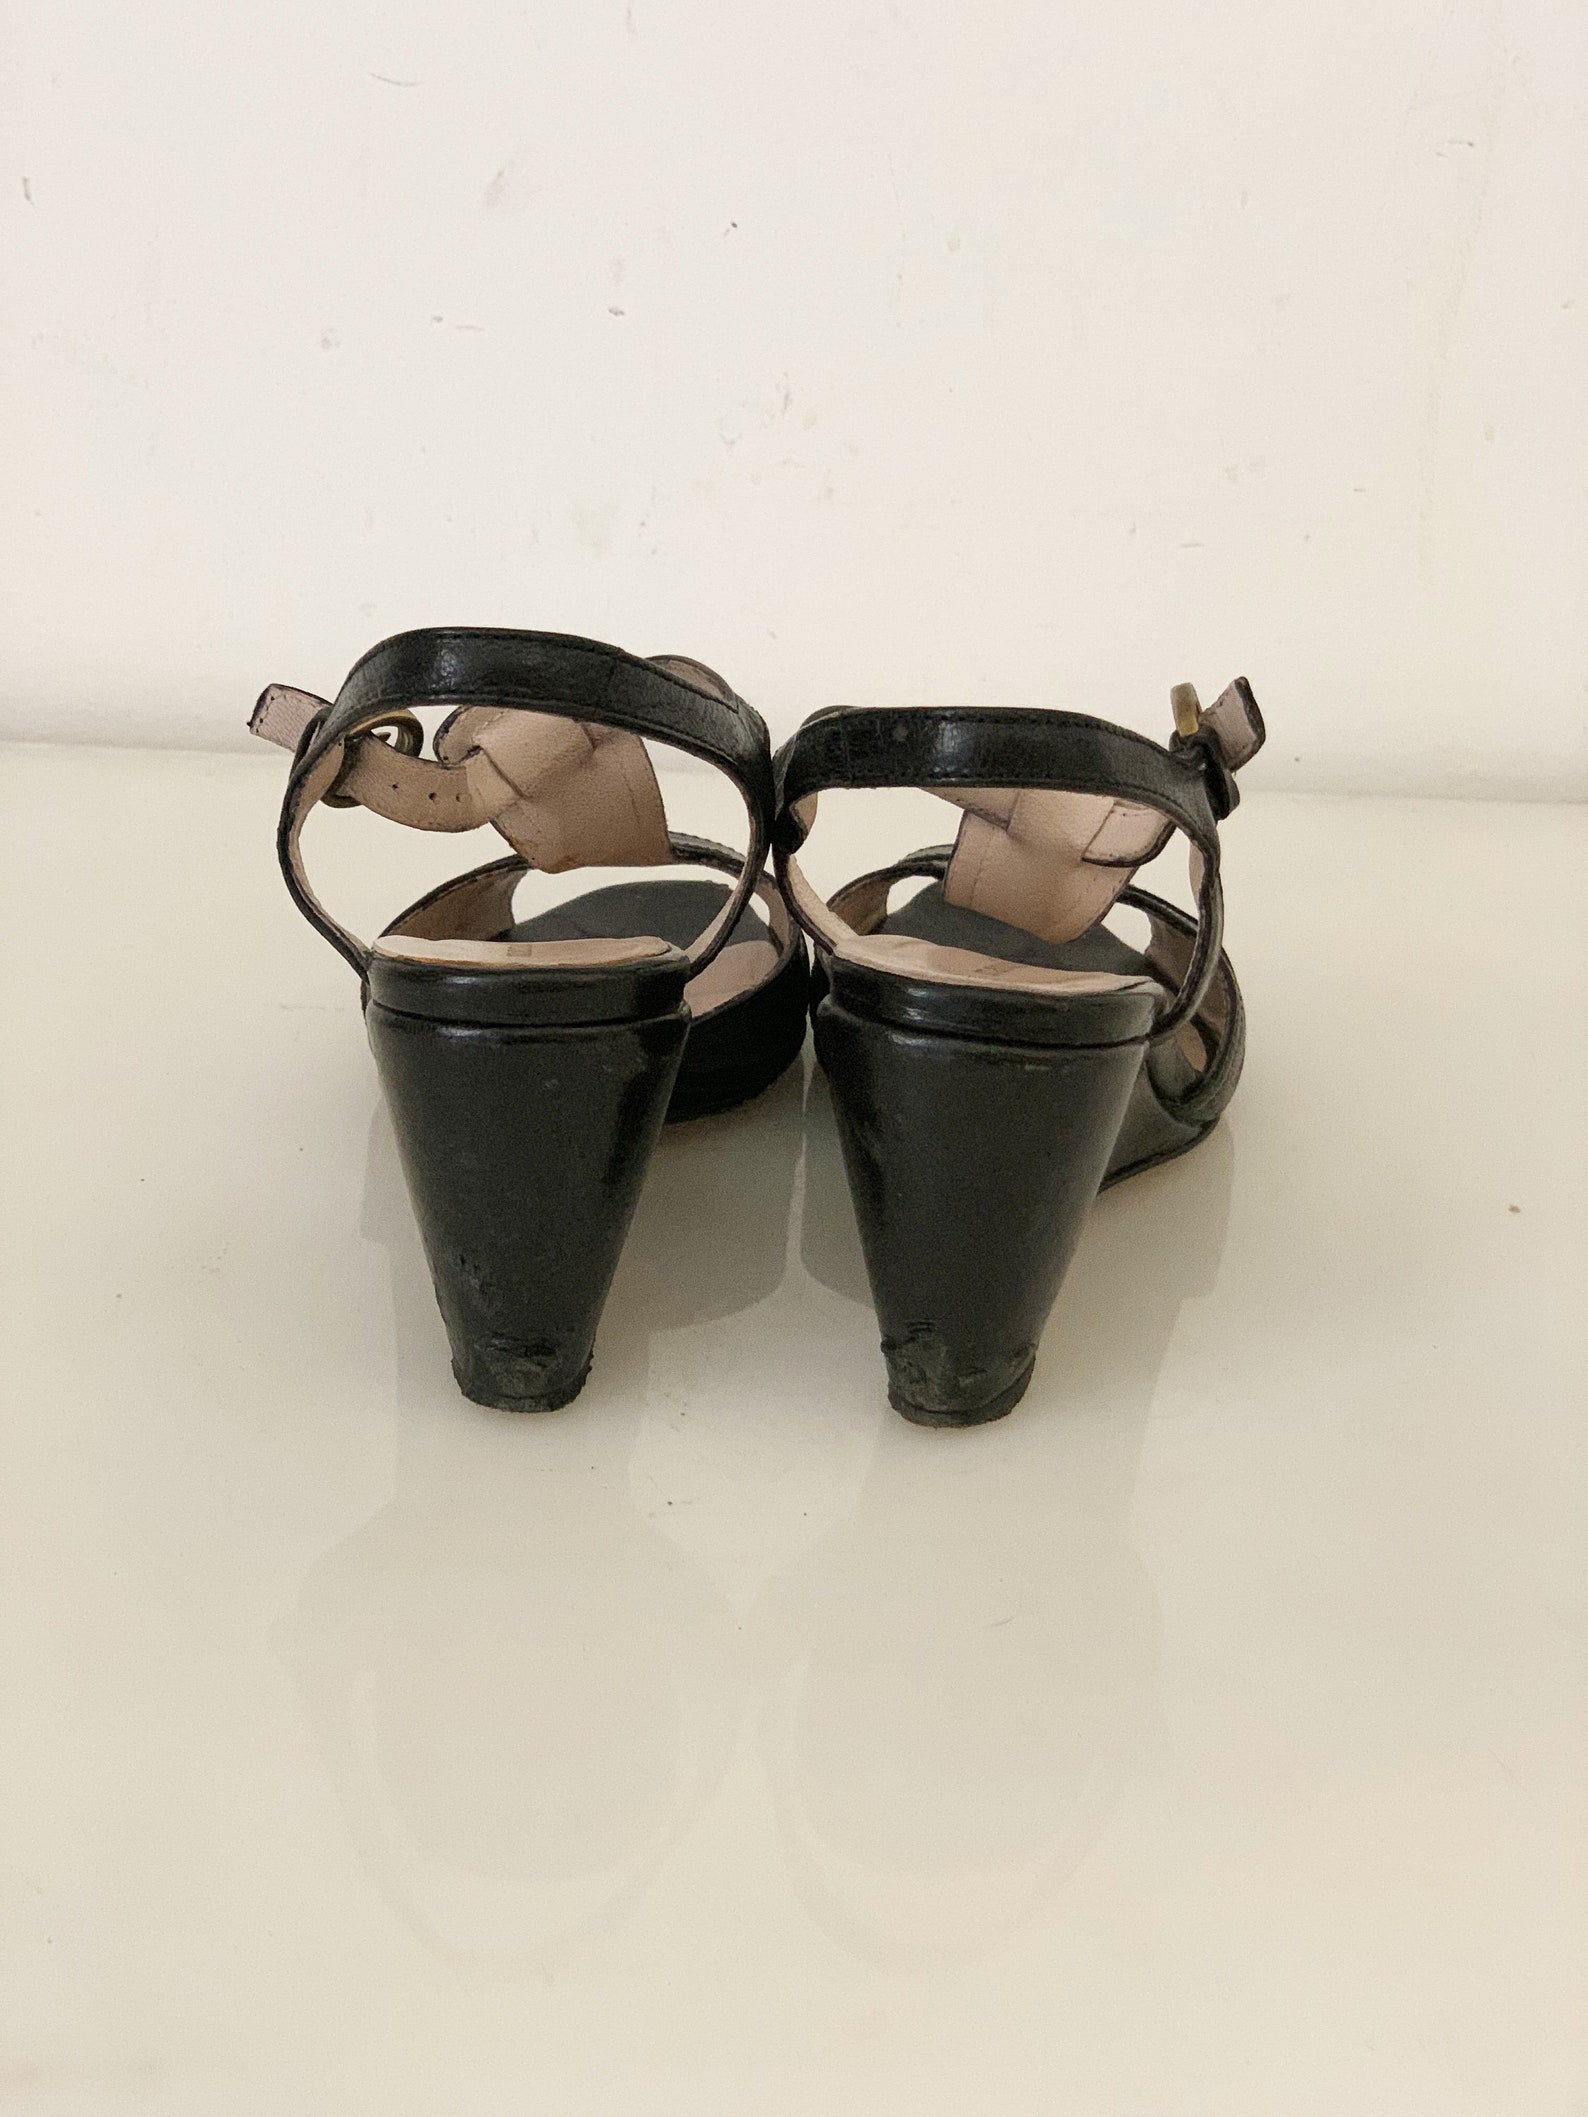 Vintage 60s Open Toe Sandals Platform Sandals in Black | Etsy